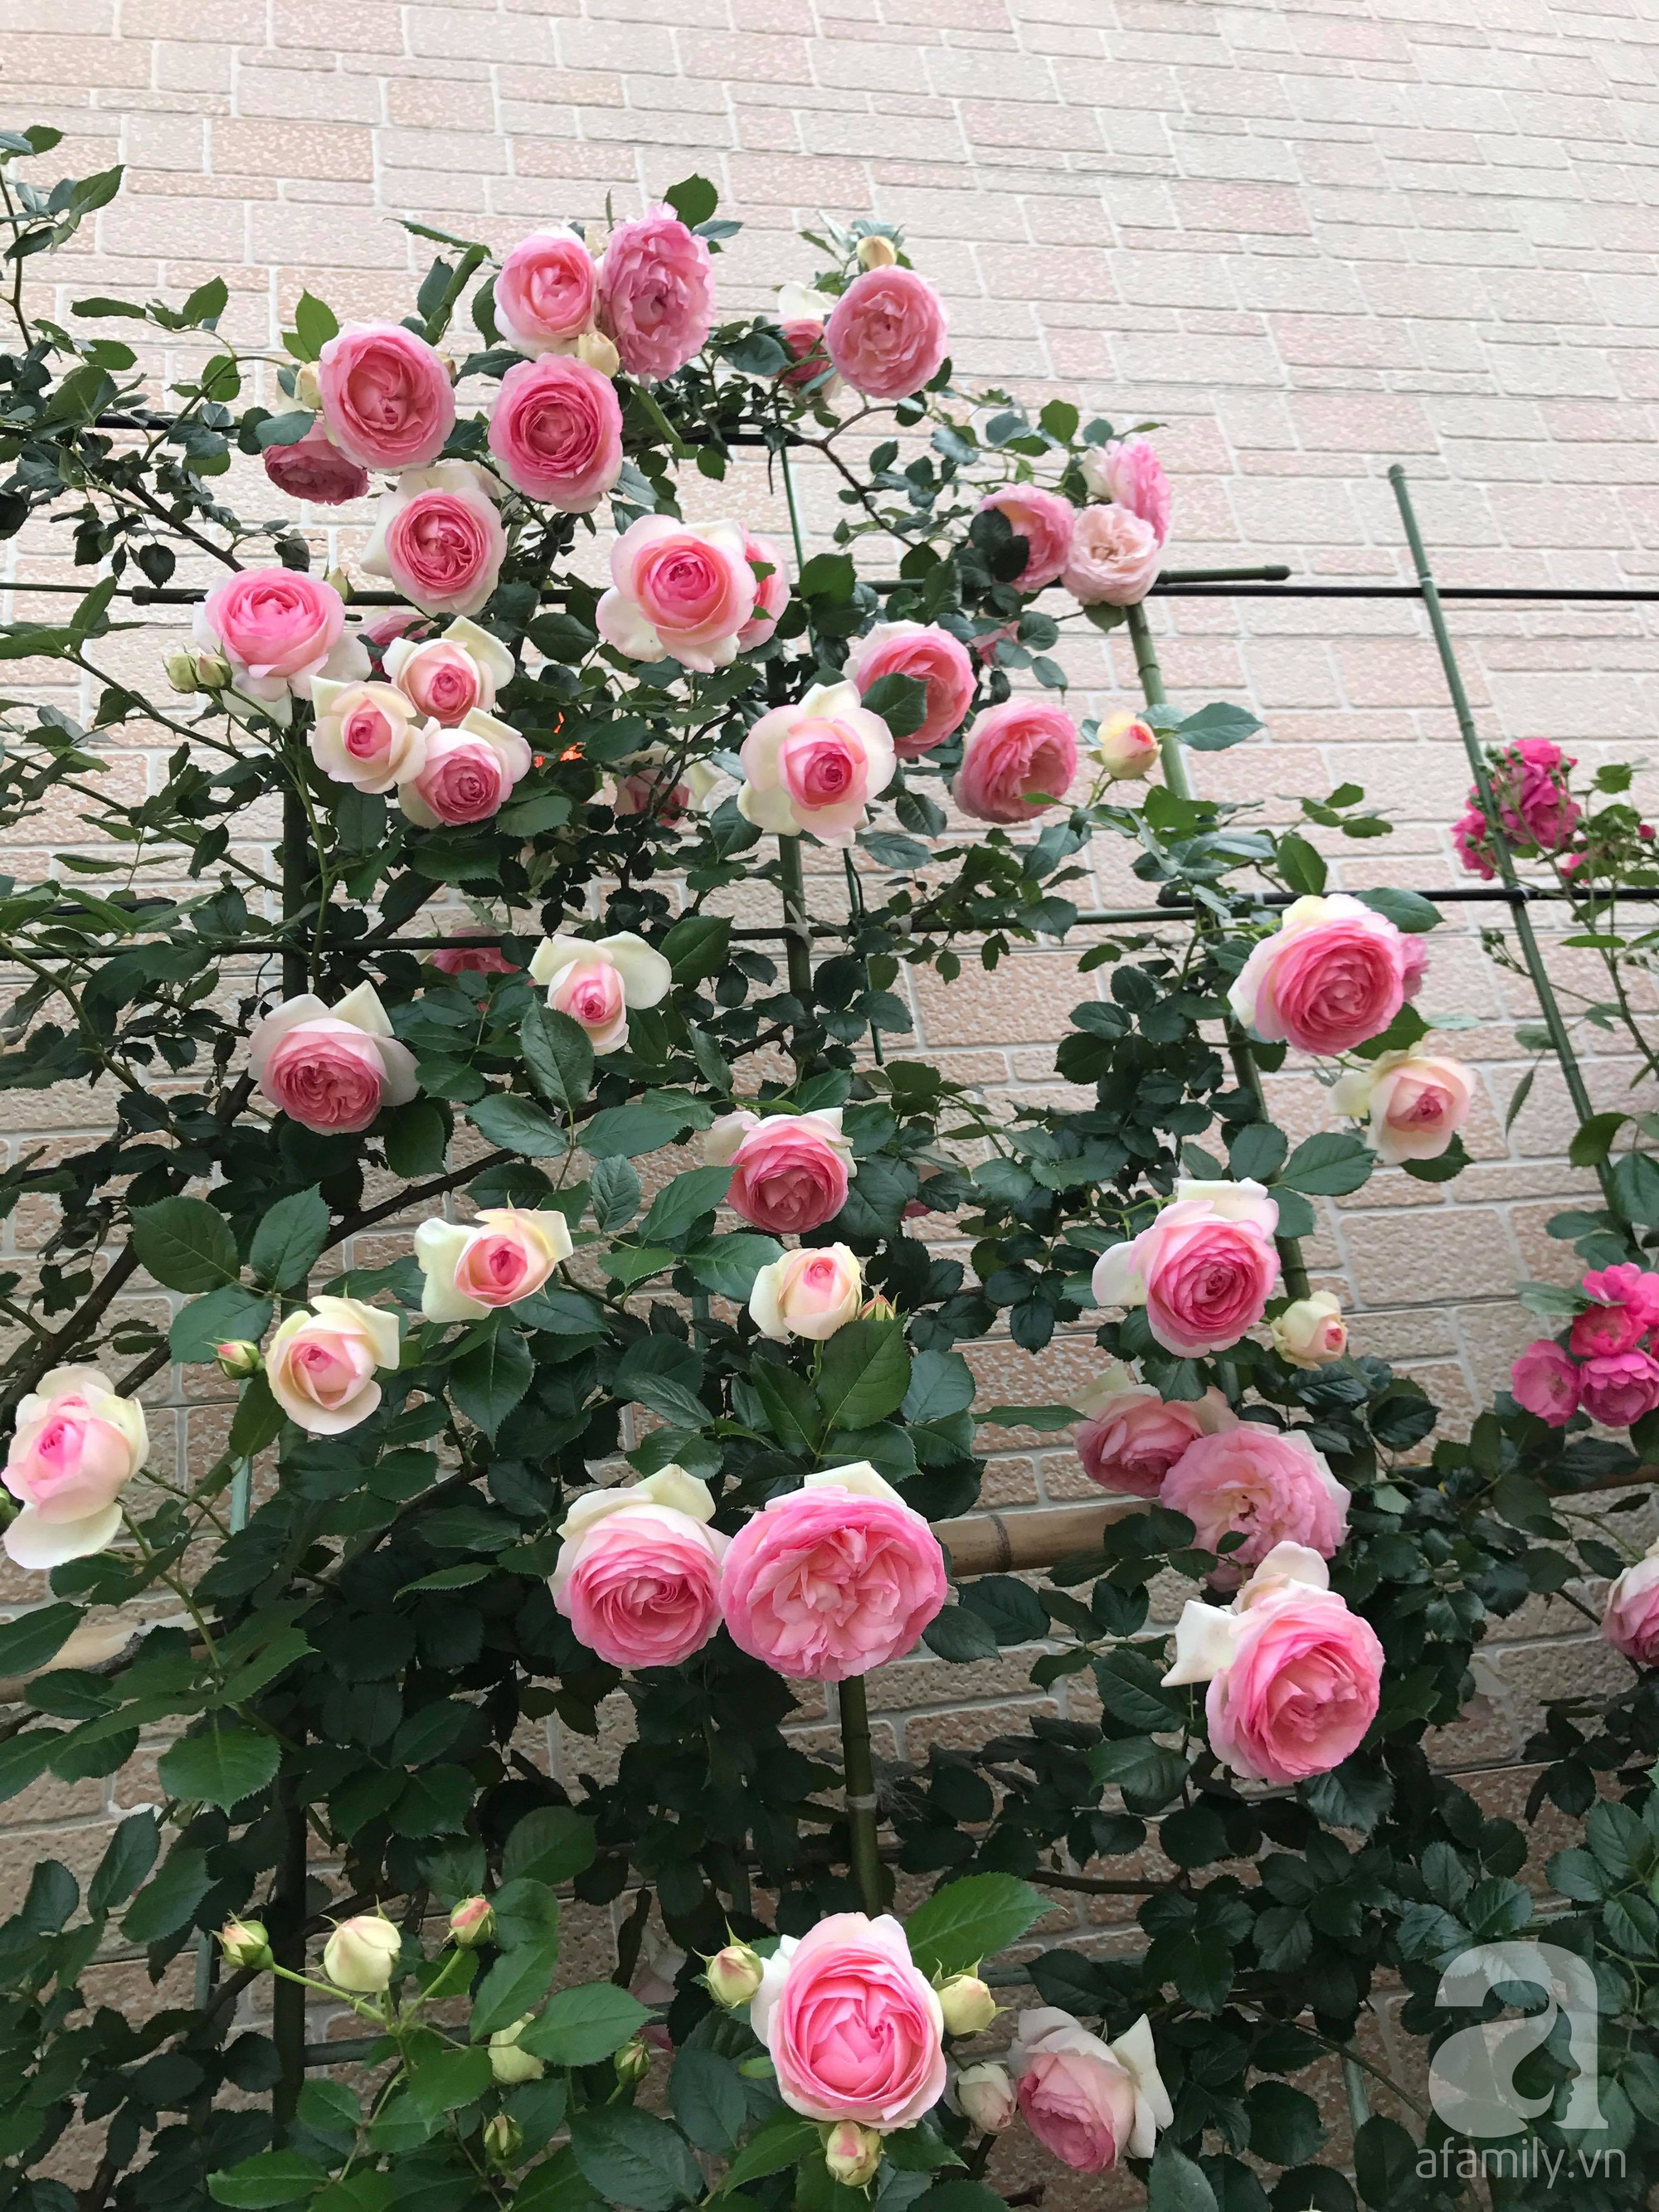 Bức tường hoa hồng đẹp như mơ trong sân vườn vỏn vẹn 6m² của người phụ nữ bỏ ra 5 năm miệt mài chăm sóc - Ảnh 7.